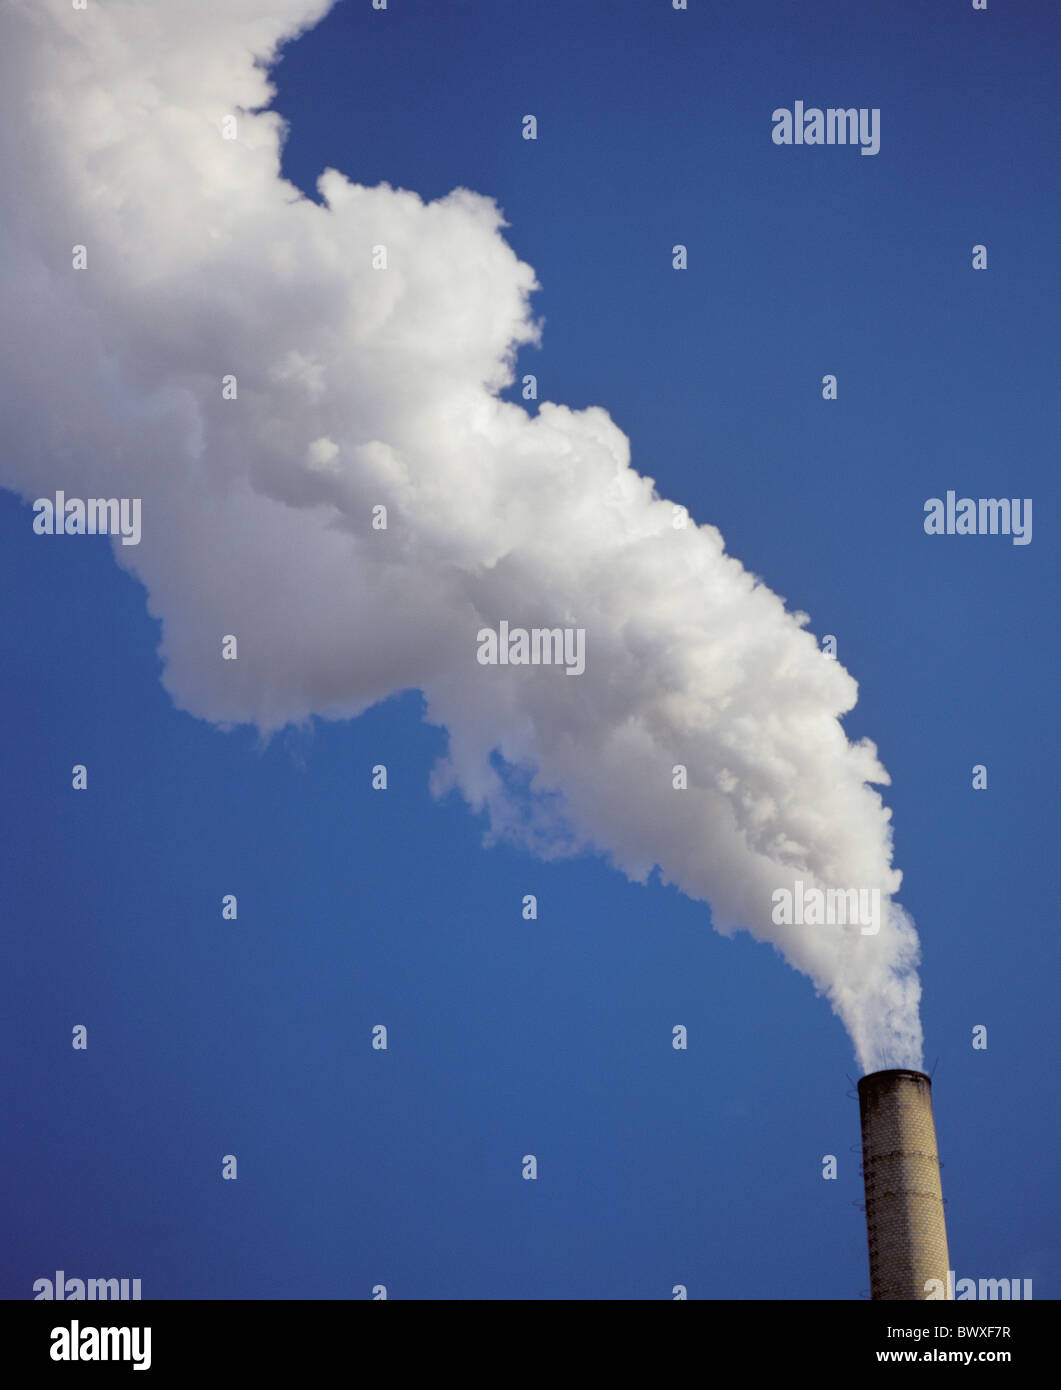 Umgebung Luftverschmutzung Fabrik Schornstein Kamin Steam Cloud Schornstein  Rauch Dampf Dampf Himmel Industrie soi Stockfotografie - Alamy